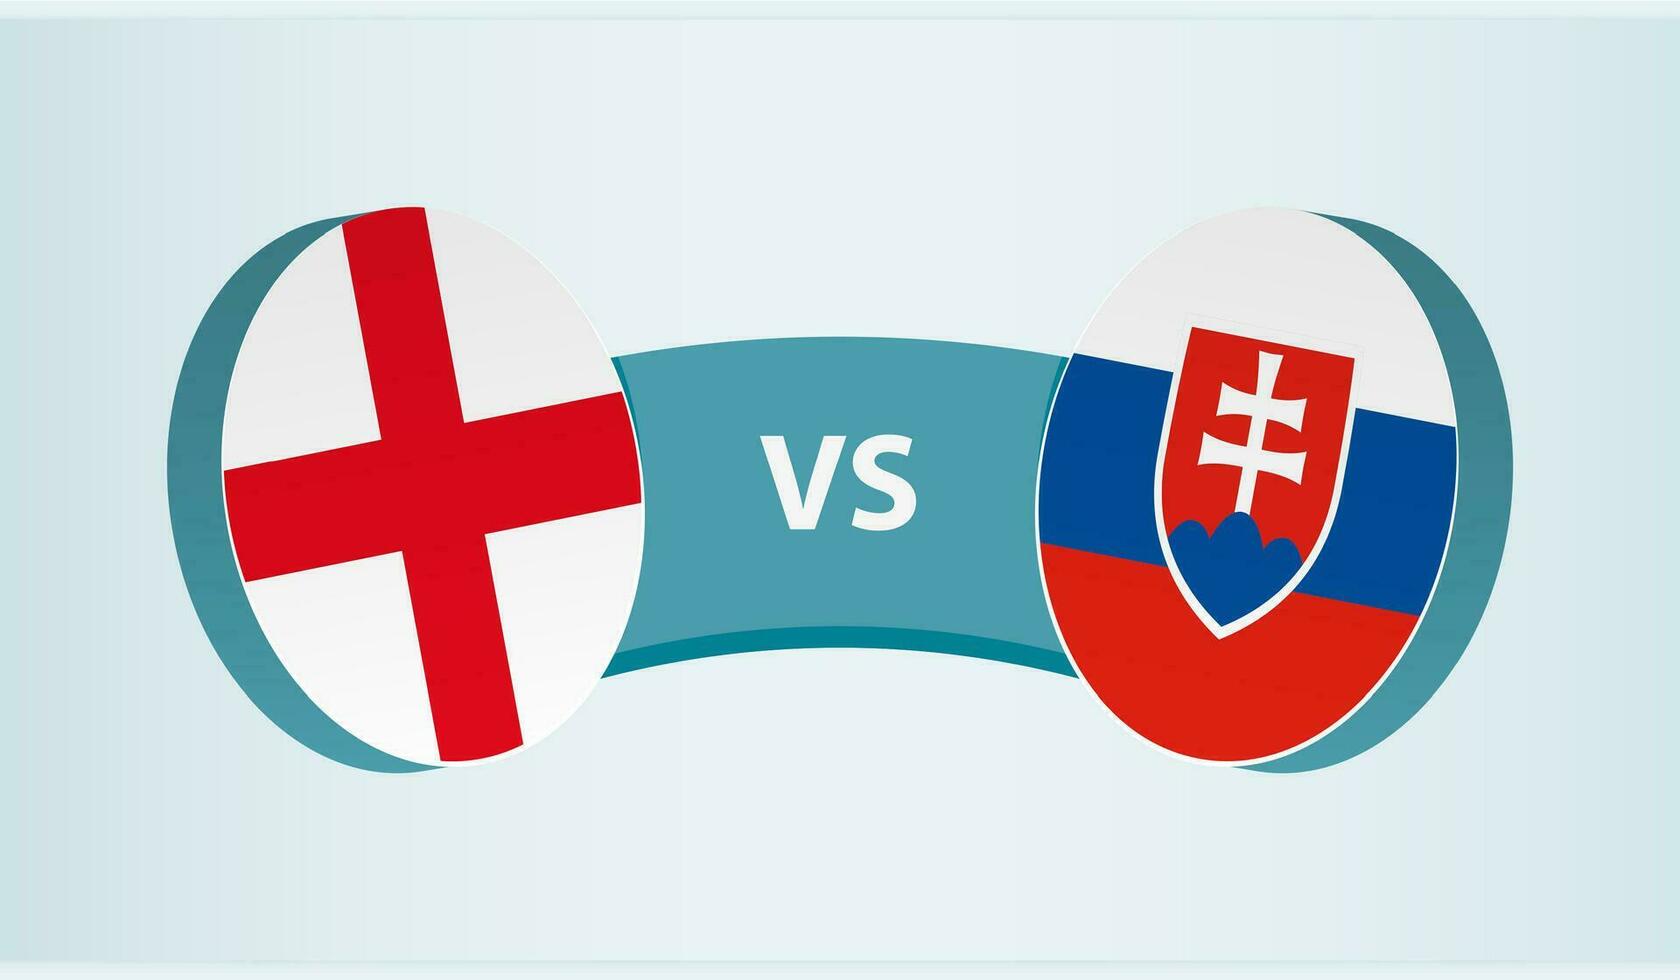 England mot Slovakien, team sporter konkurrens begrepp. vektor